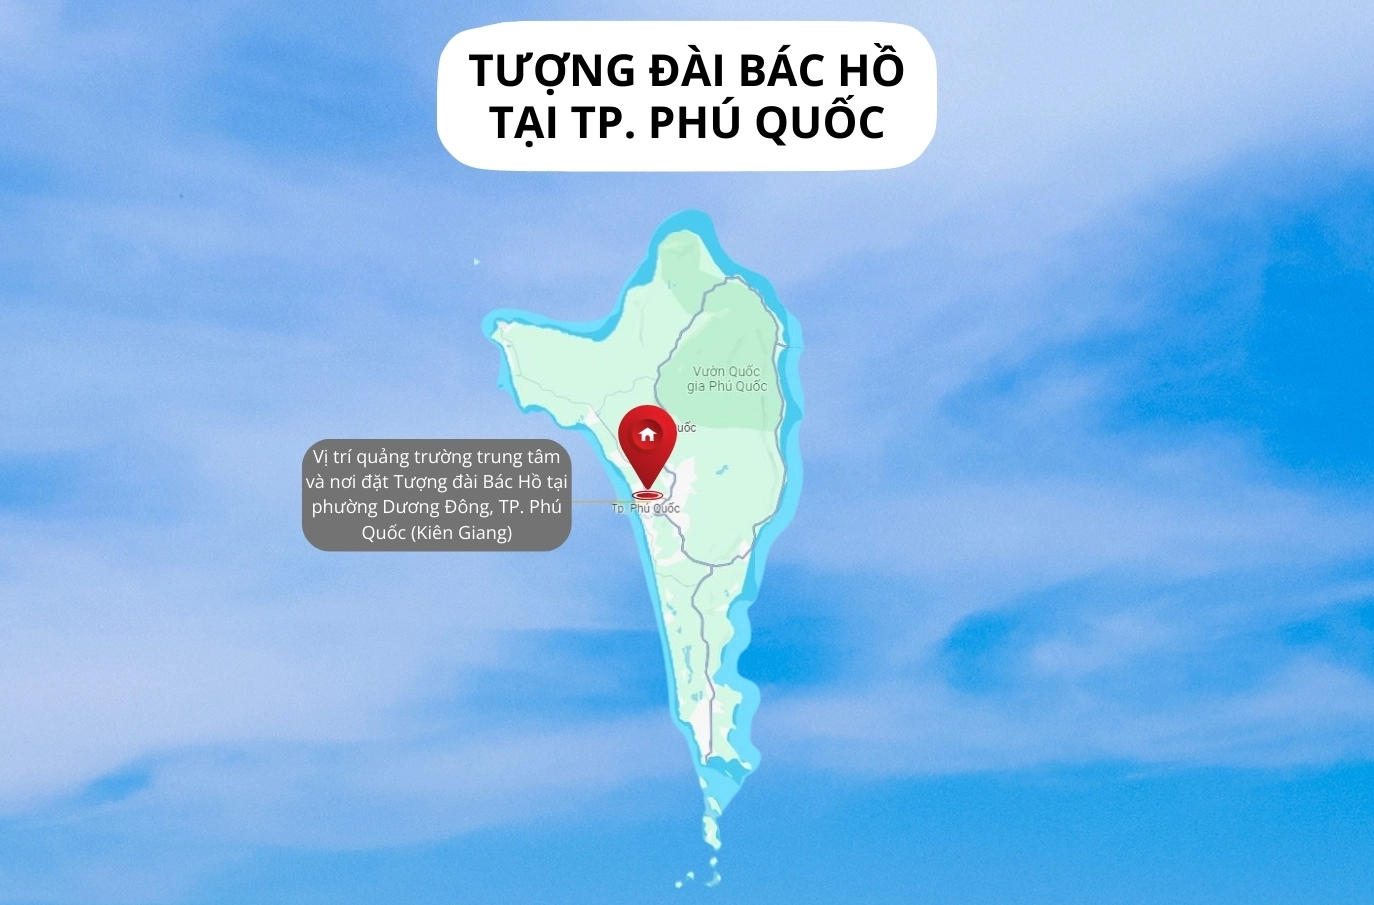 Infographics Quảng trường Hồ Chí Minh và tượng đài Bác Hồ tại TP. Phú Quốc